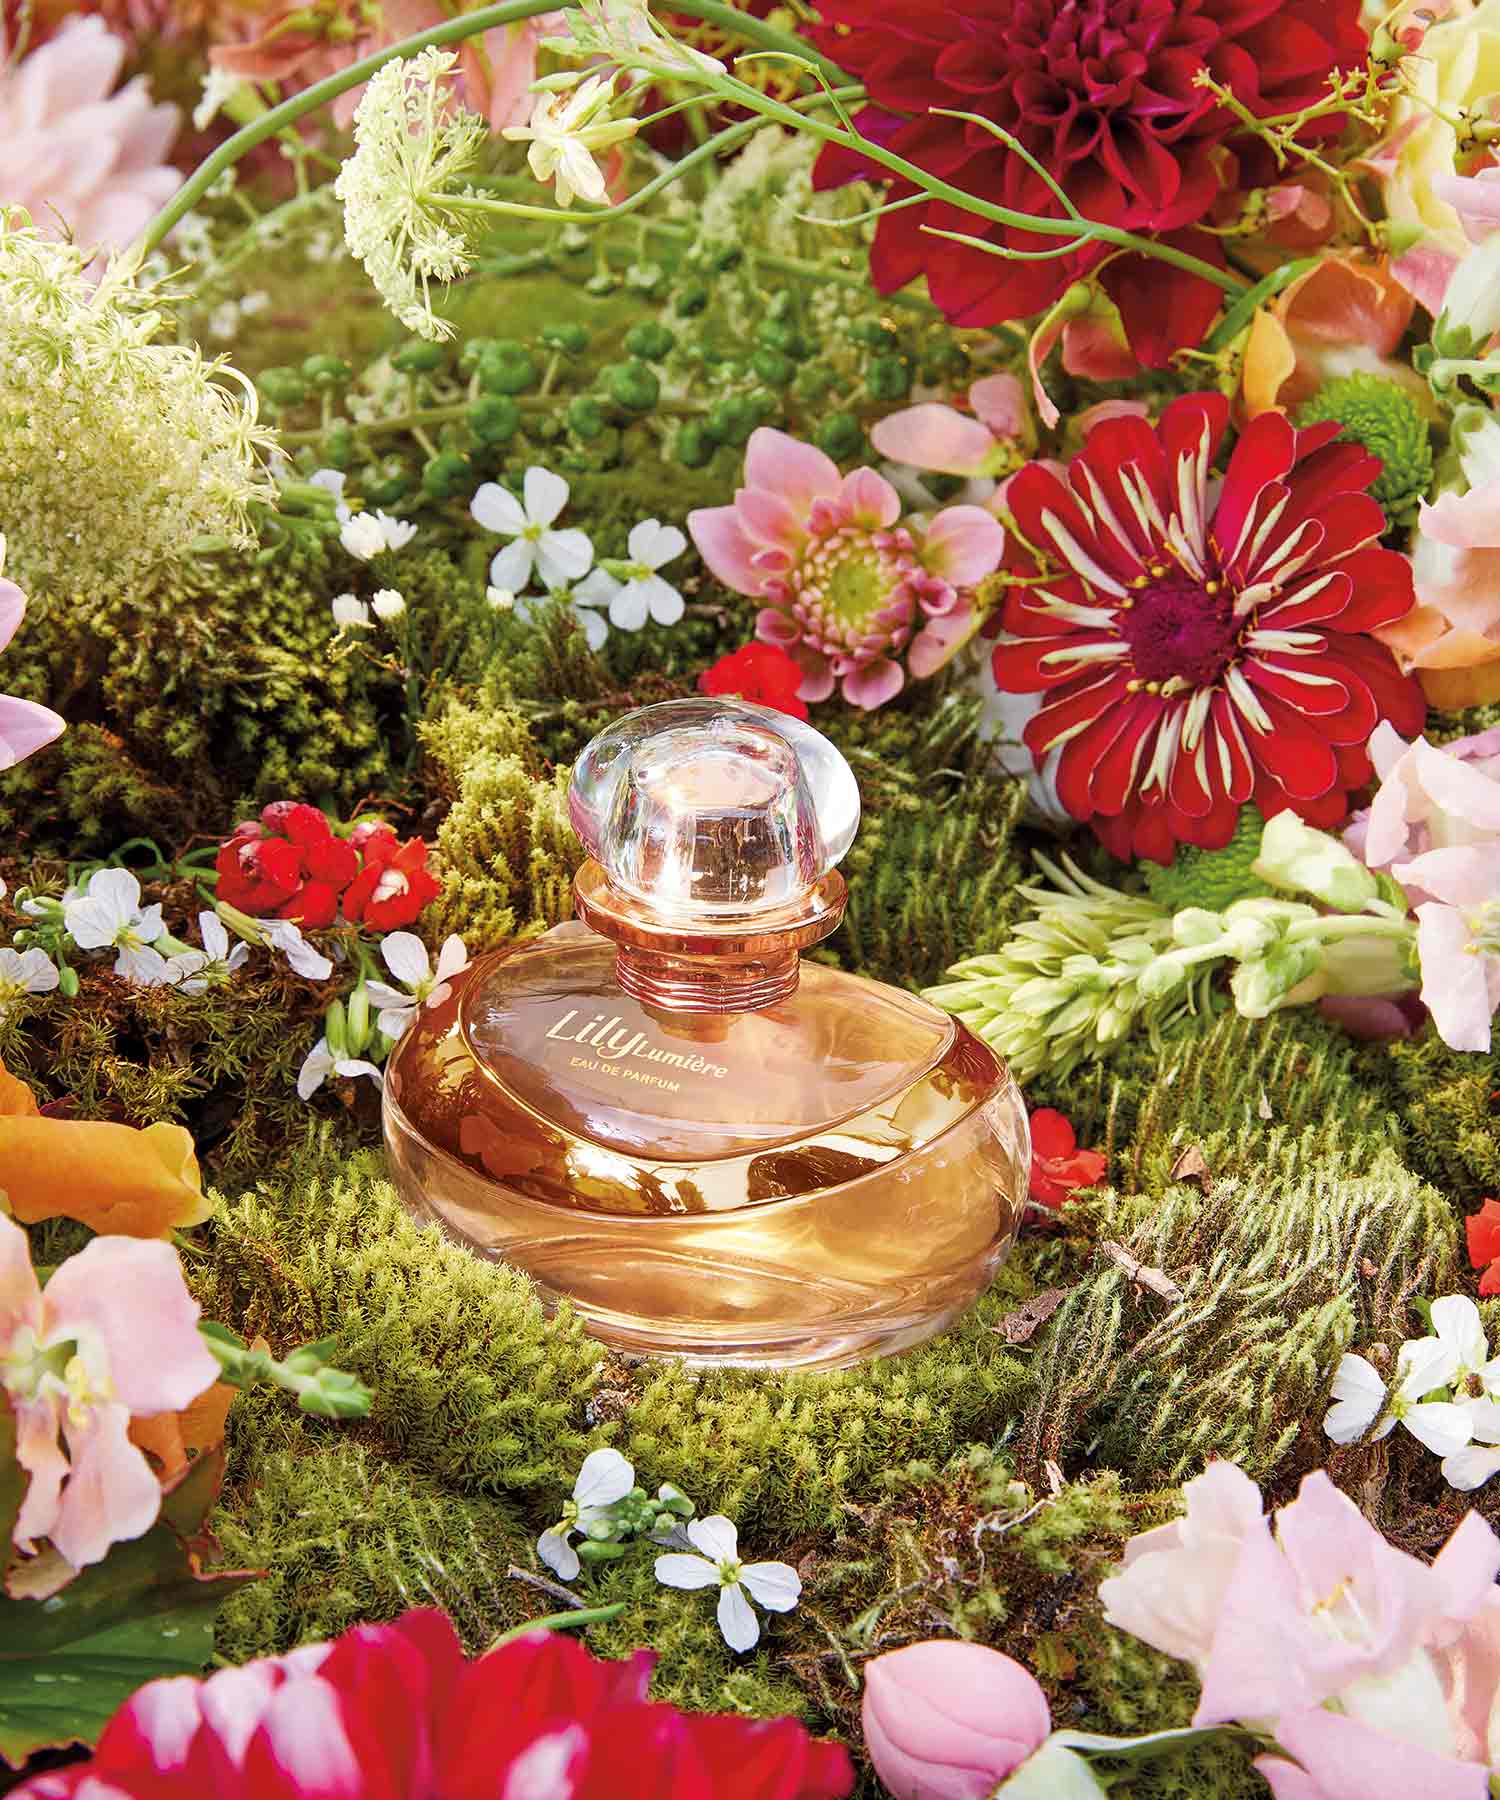 Frasco de perfume Lily num ambiente floral alusivo ao Dia da Mãe. A embalagem é em vidro transparente, com um líquido amarelo claro dentro e uma tampa dourada. O rótulo tem o nome do perfume em letras elegantes.